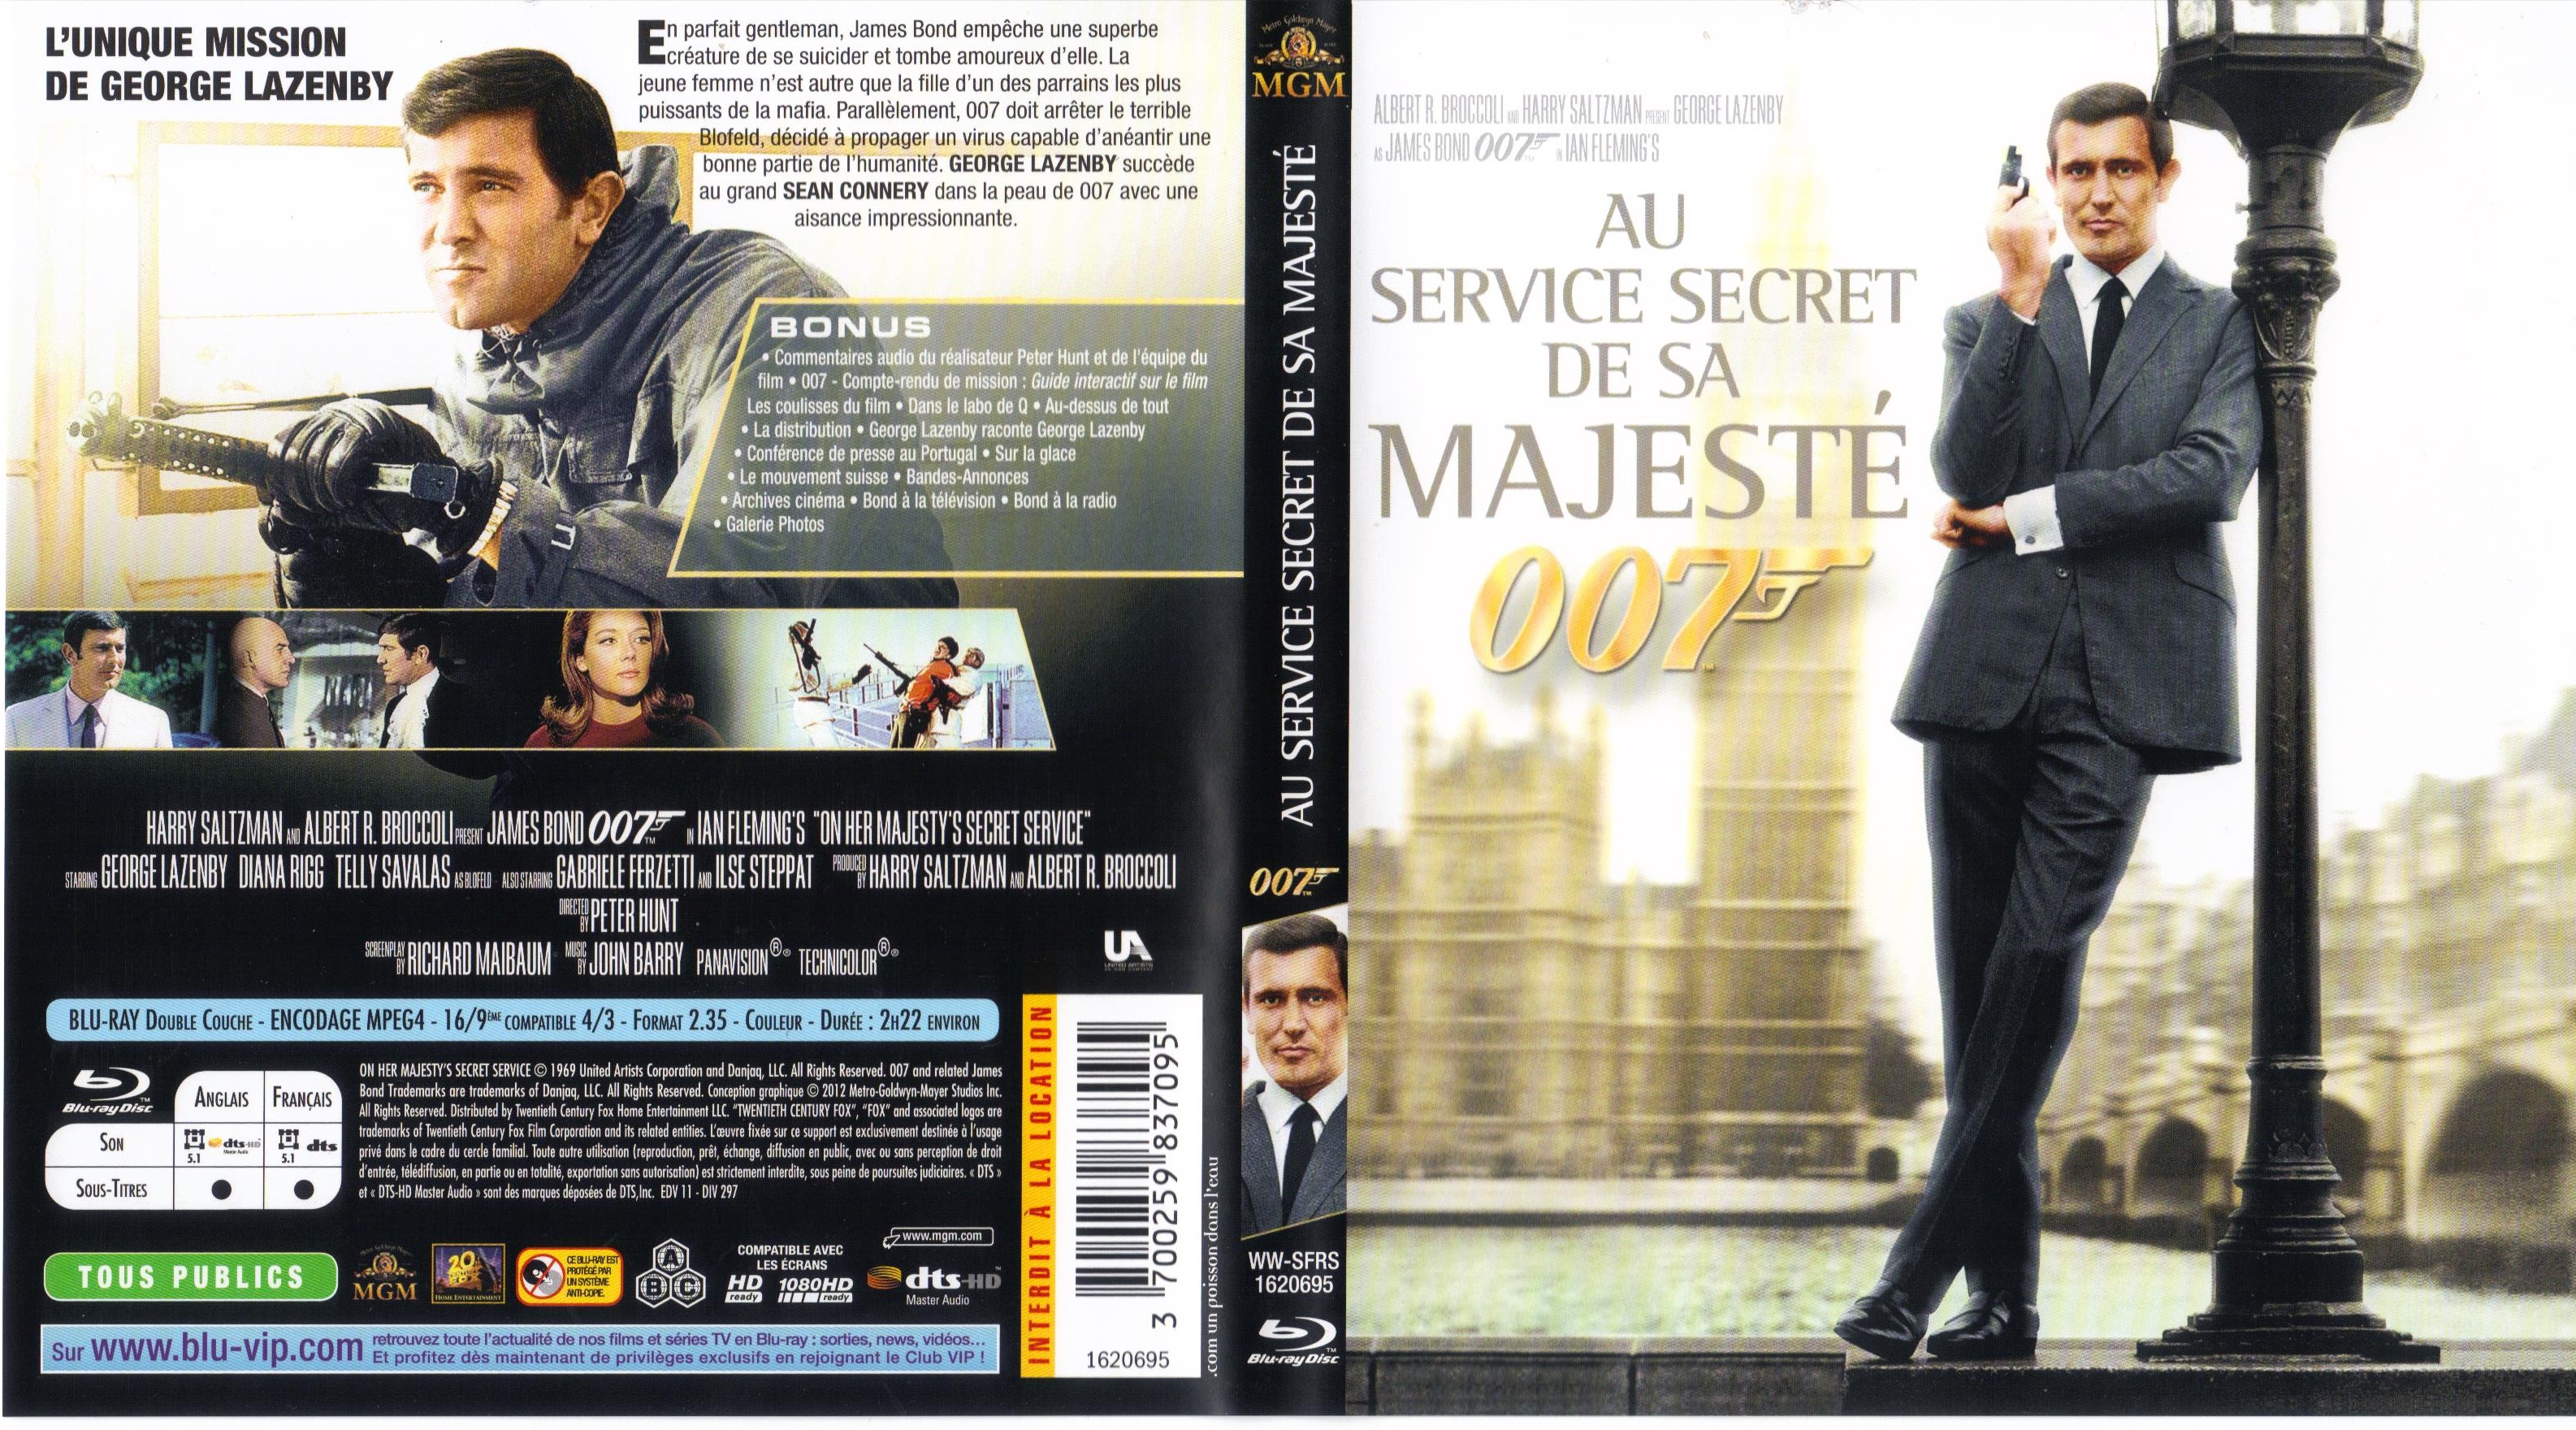 Jaquette DVD James Bond 007 Au service secret de sa majest (BLU-RAY)